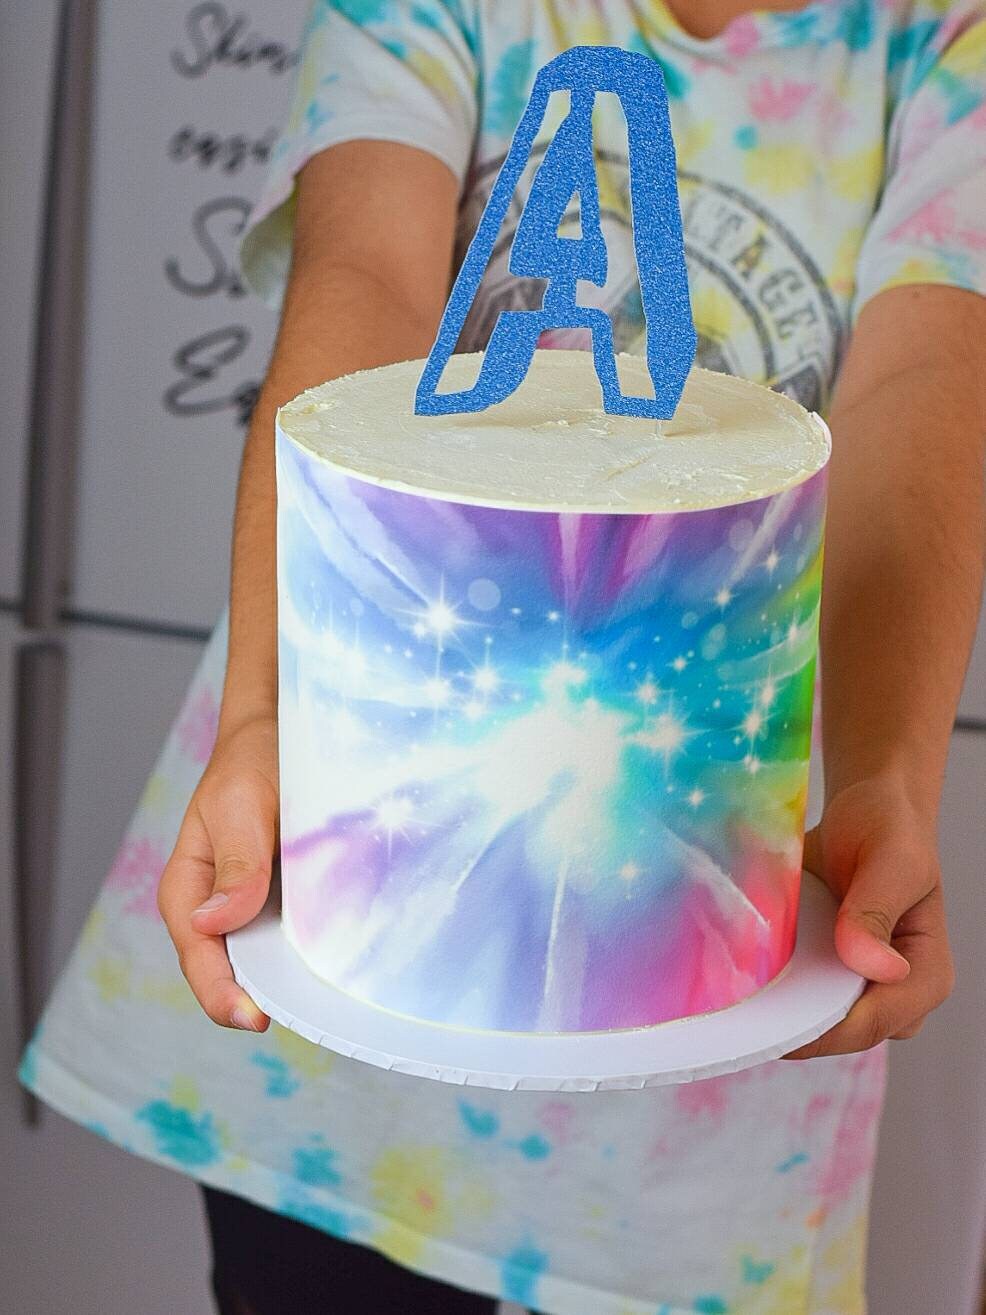 Tie Dye Cake Wrap - A4 Edible Image - Tie Dye Themed Party Props